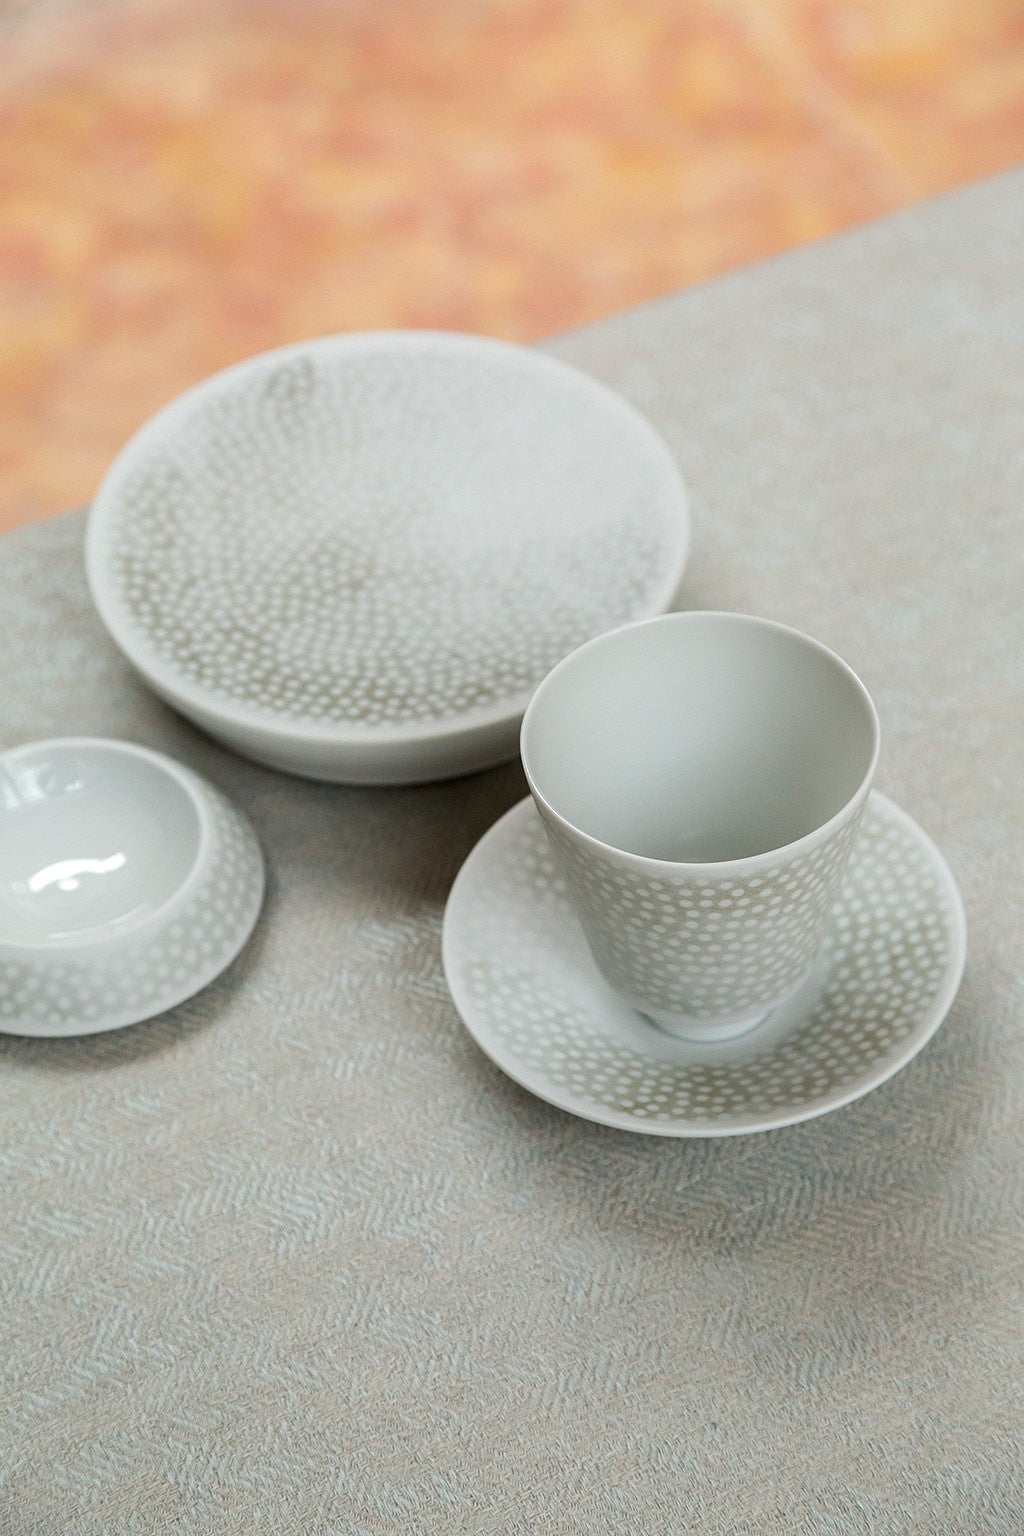 Ein Satz weißes, strukturiertes Keramikgeschirr auf einer hellen Oberfläche, darunter eine Tasse, eine Untertasse und zwei Teller.